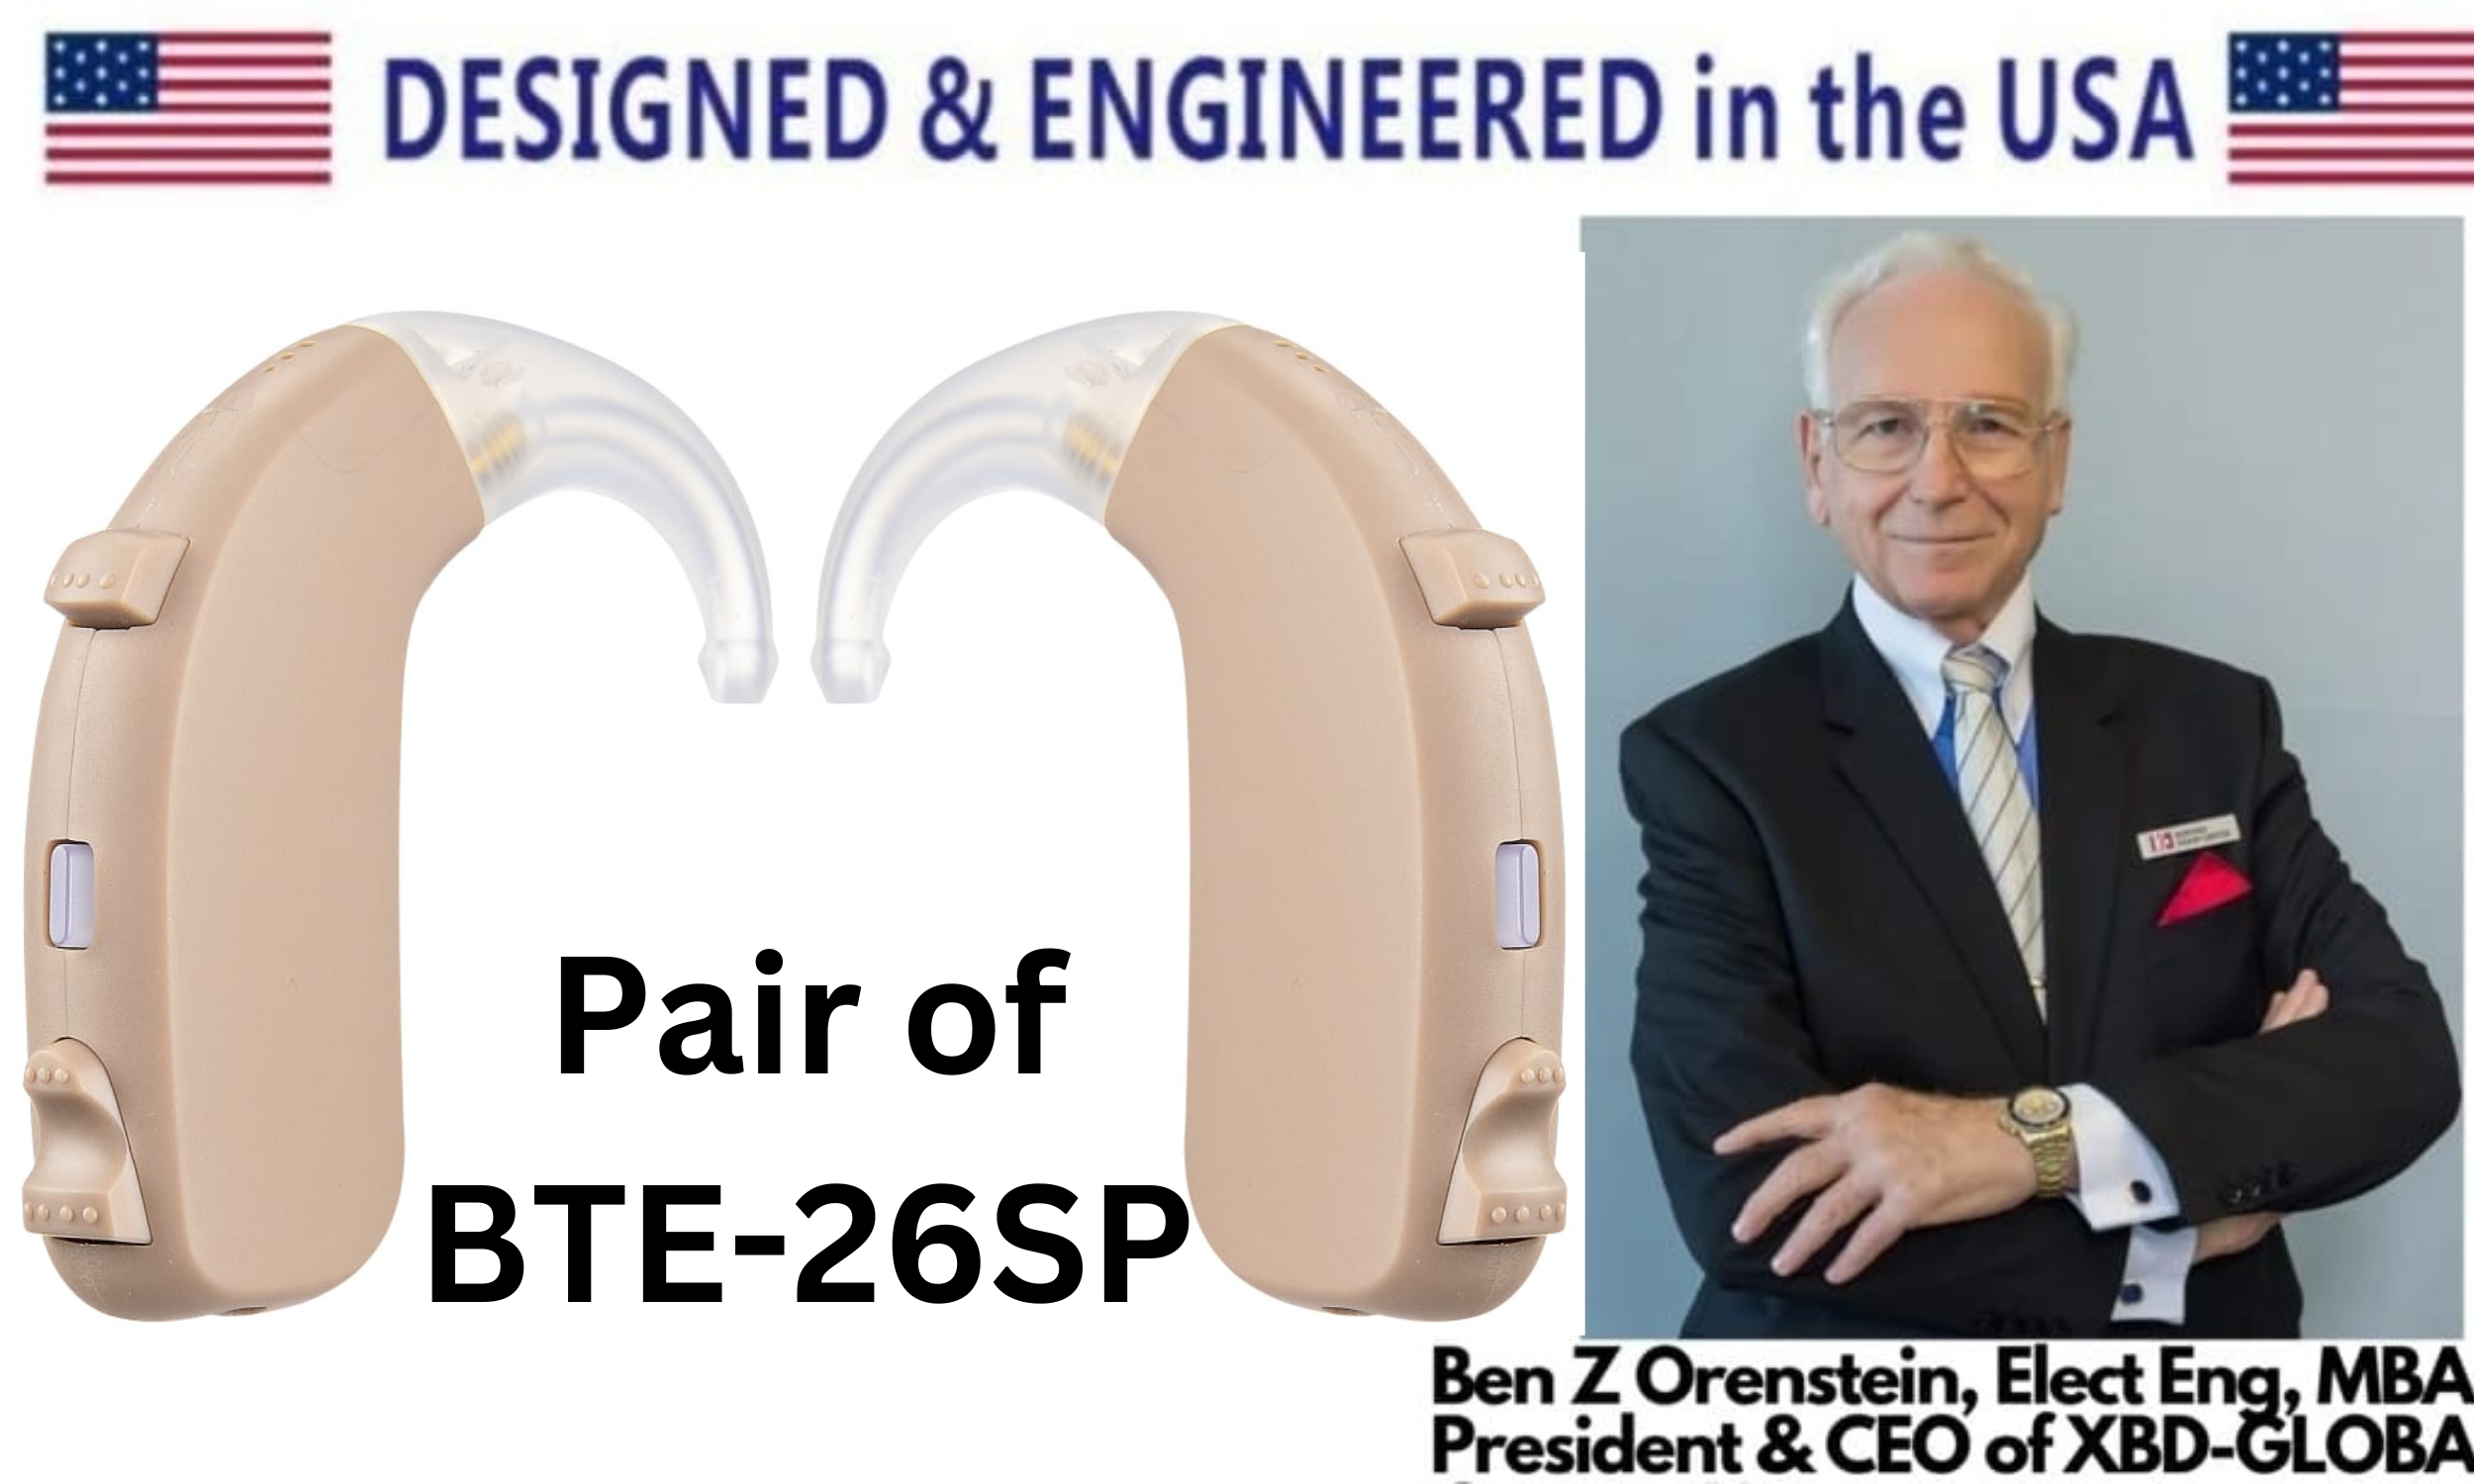 eEAR® Paire de BTE-26SP Gain de crête 70 dB Amélioré derrière l'oreille Aide auditive numérique BTE Conçue pour les pertes auditives sévères Conçue et fabriquée aux États-Unis Vendue à plus de 5 000 dans le monde